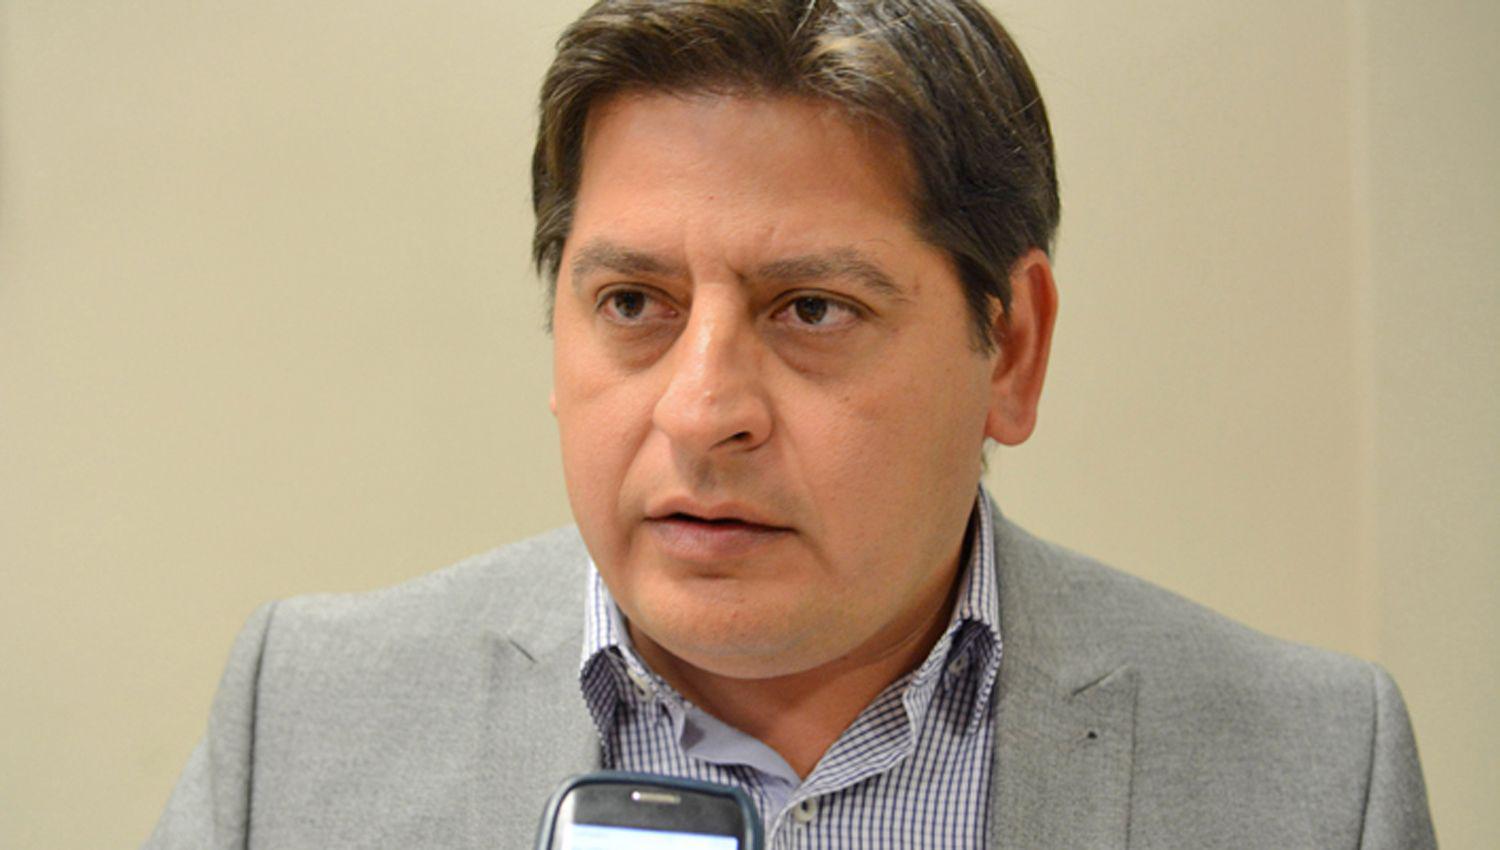 El abogado de Ant�nez
Dr Miguel Torres
solicitó su excarcelación